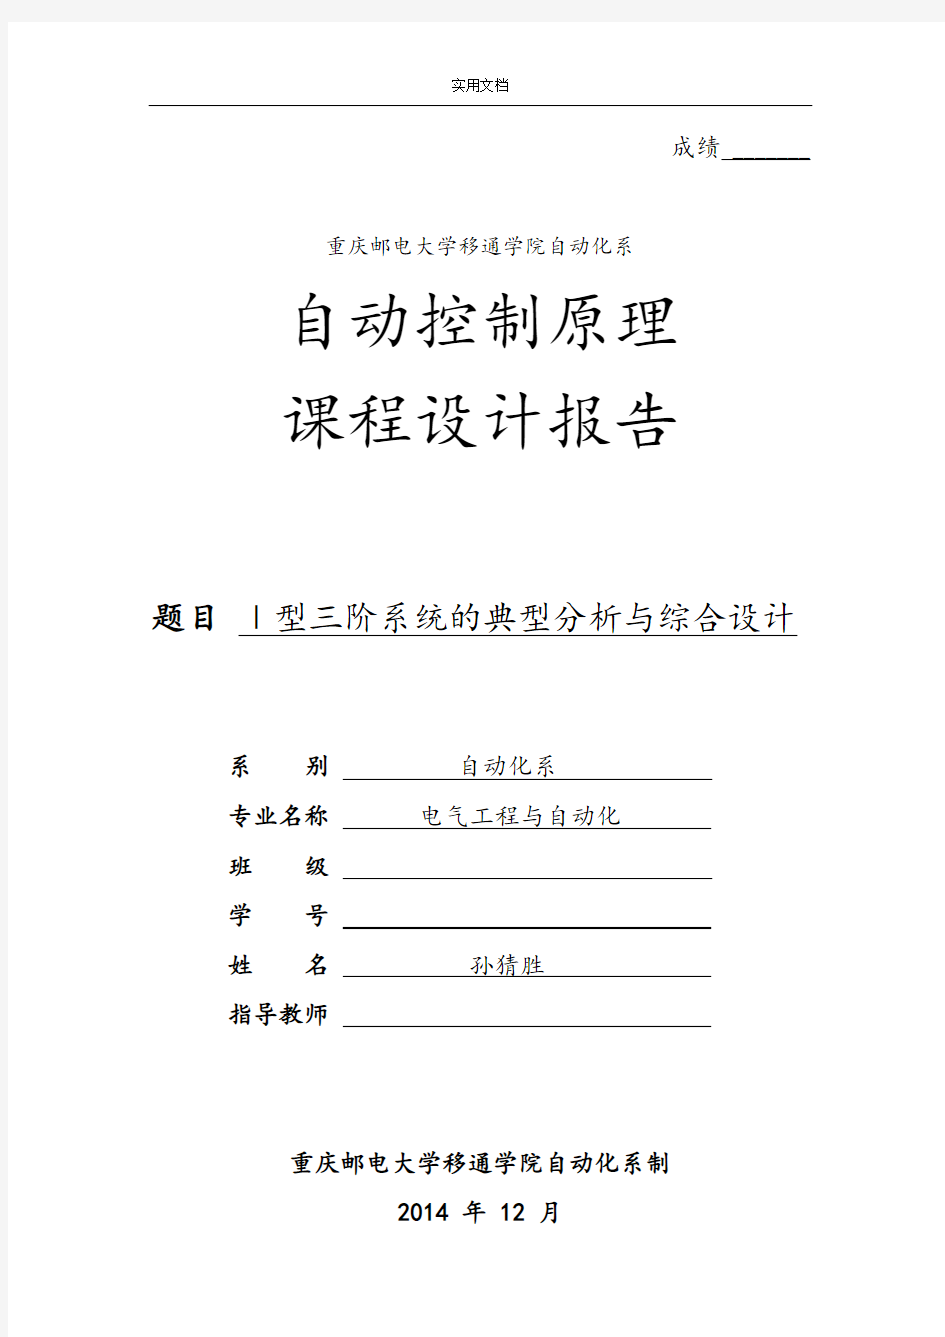 自动控制原理课程设计最终版,重庆邮电大学移通学院